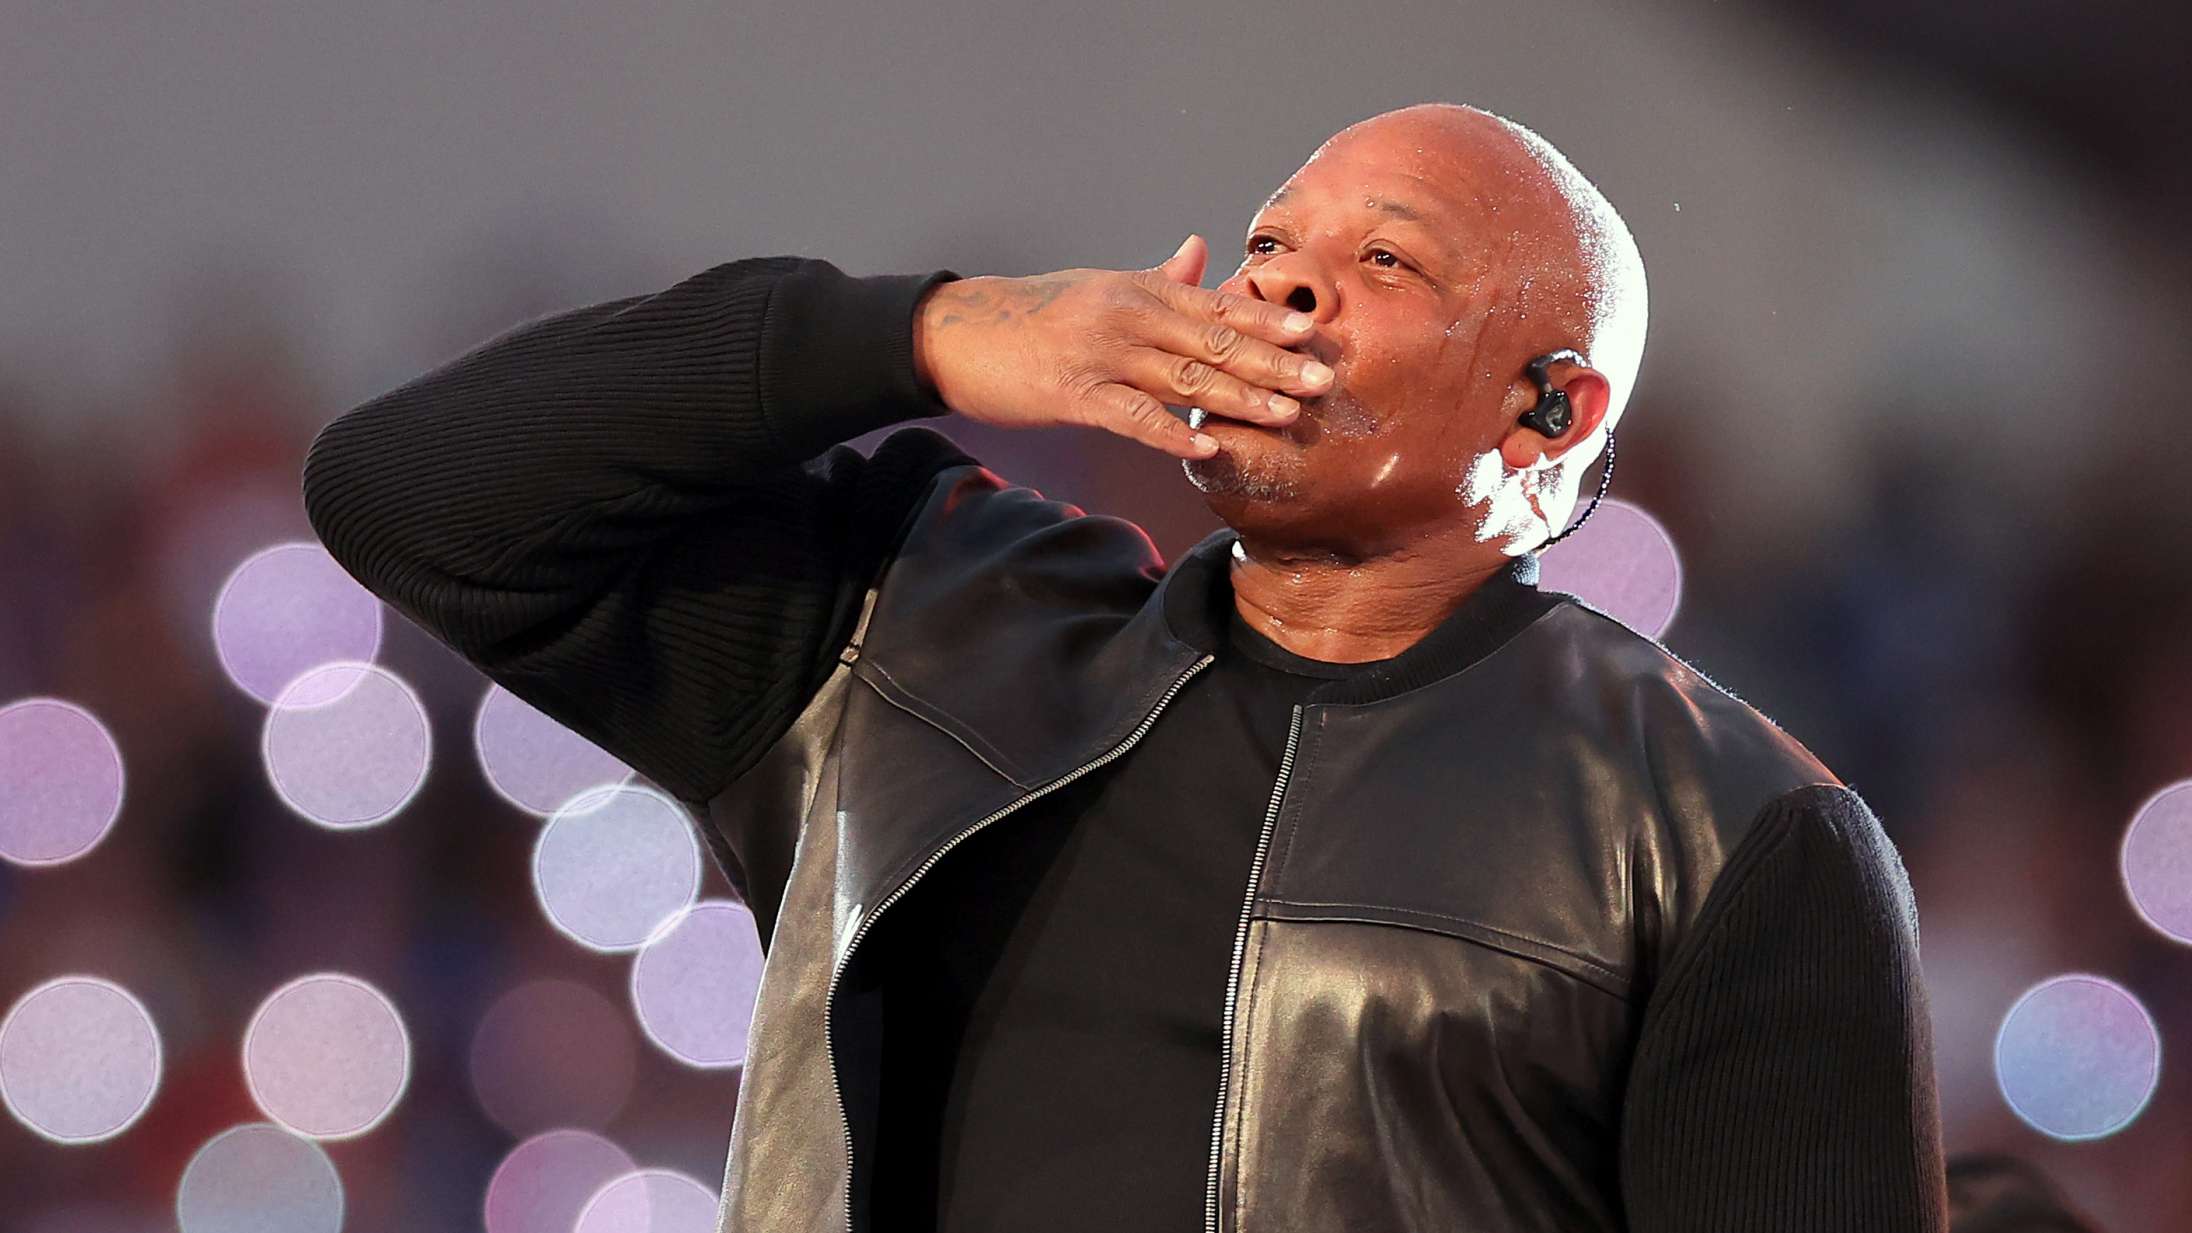 Lagde du mærke til Dr. Dres subtile klaverhyldest til 2Pac under Super Bowl?